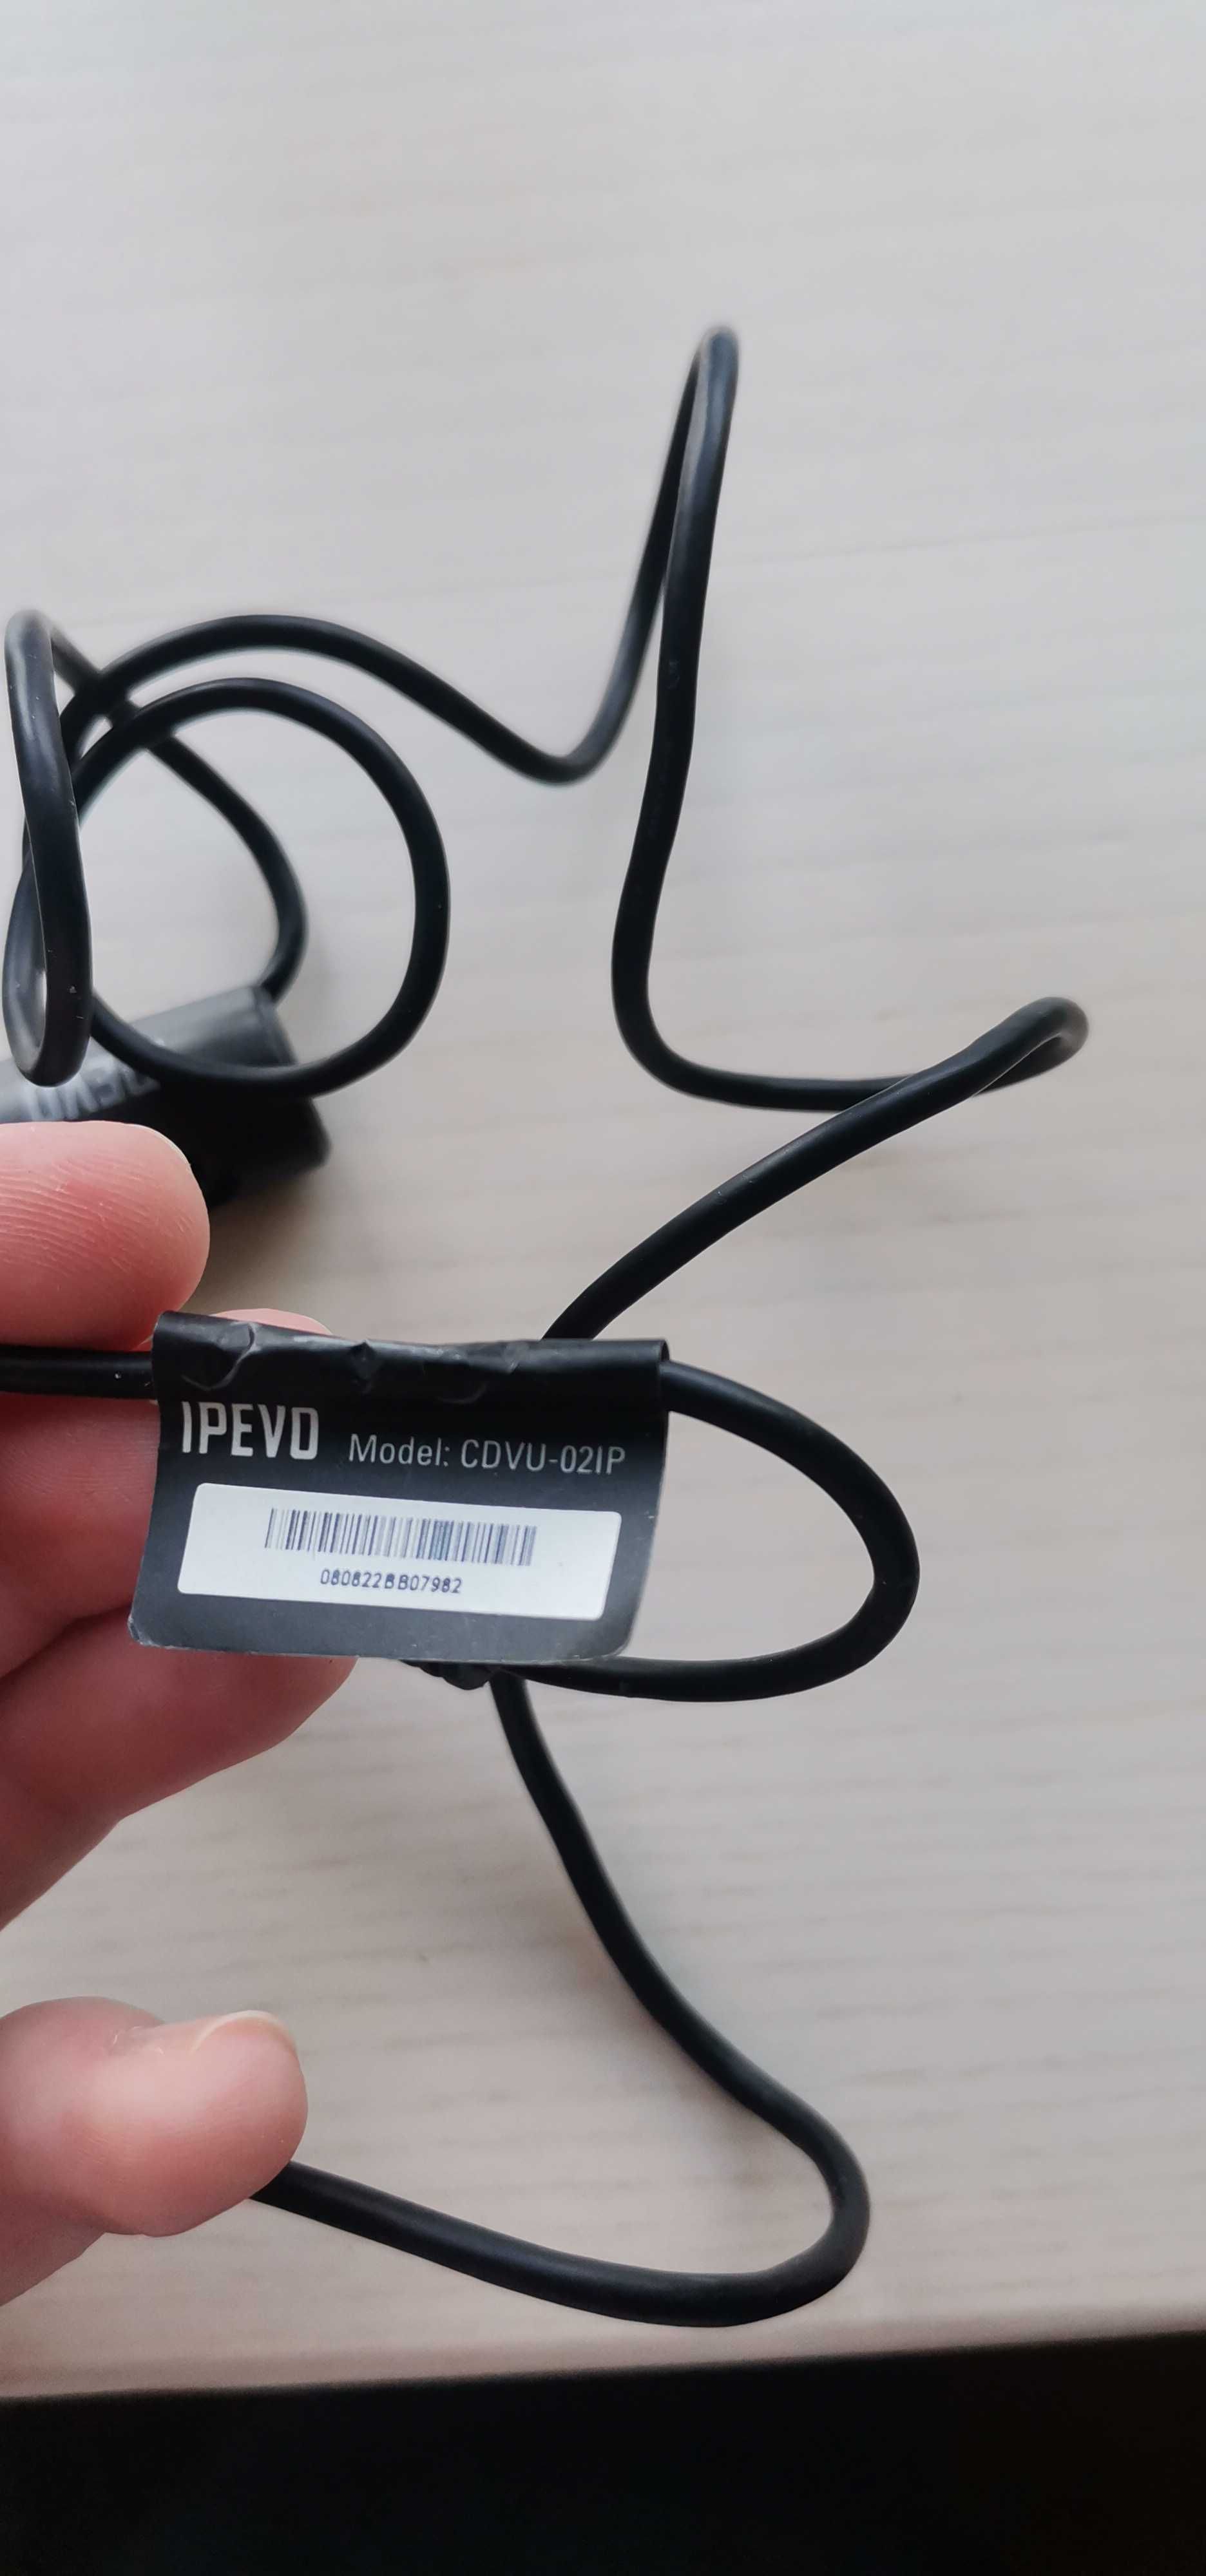 Вебкамера IPEVO CDVU-02IP